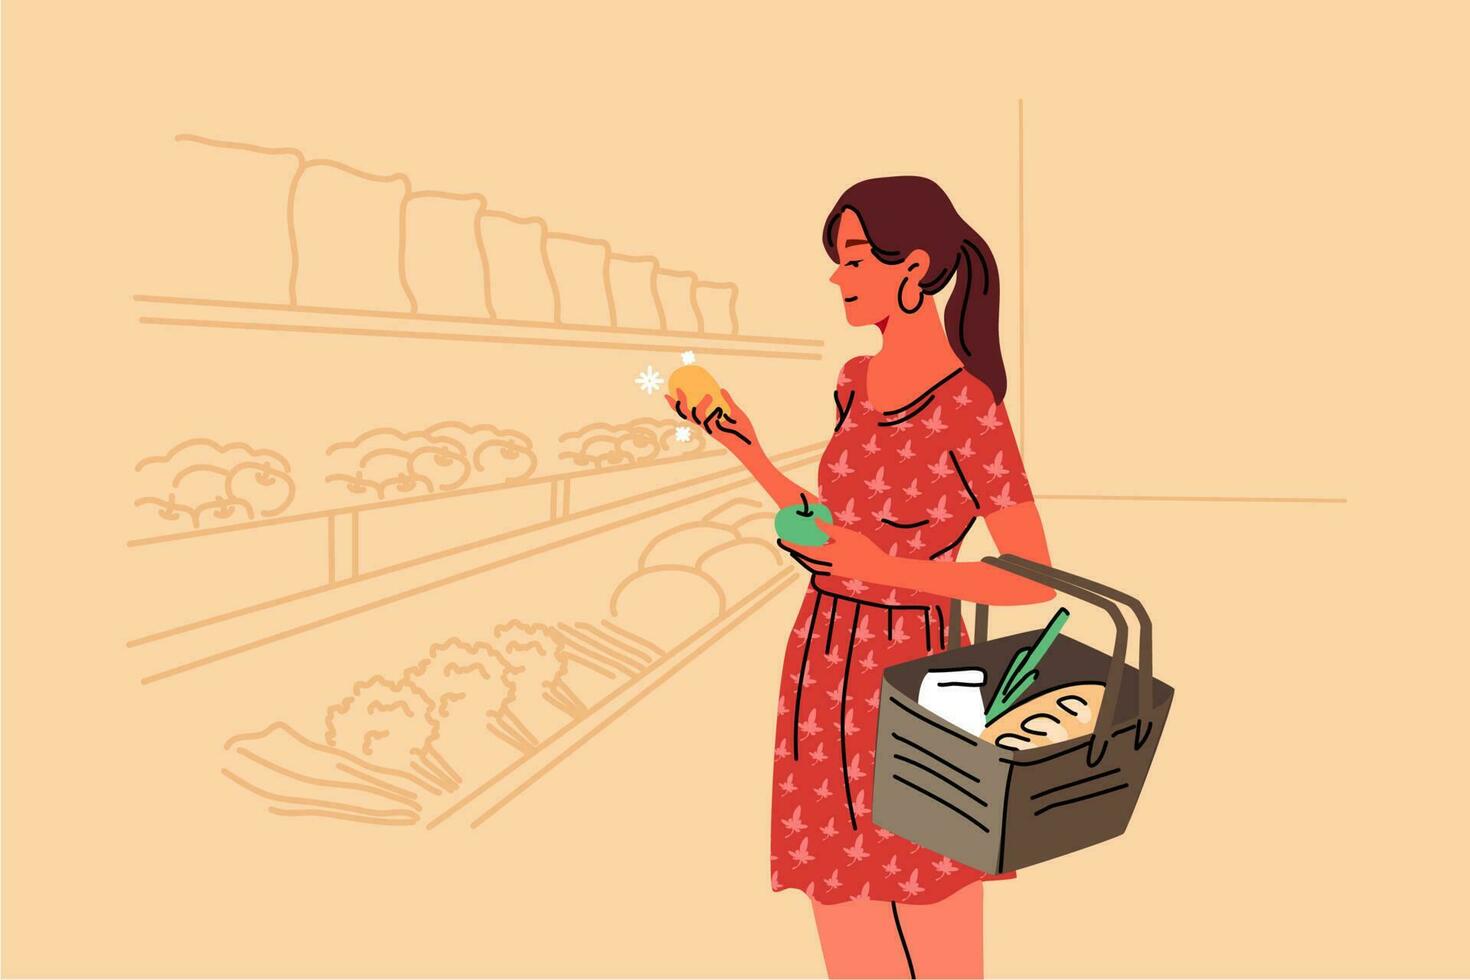 handla, försäljning, coice, Lagra, köpa begrepp. ung kvinna köpare konsument kund karaktär välja mat Produkter i matvaror affär mataffär innehav frukt i hand. dagligen liv rekreation illustration. vektor